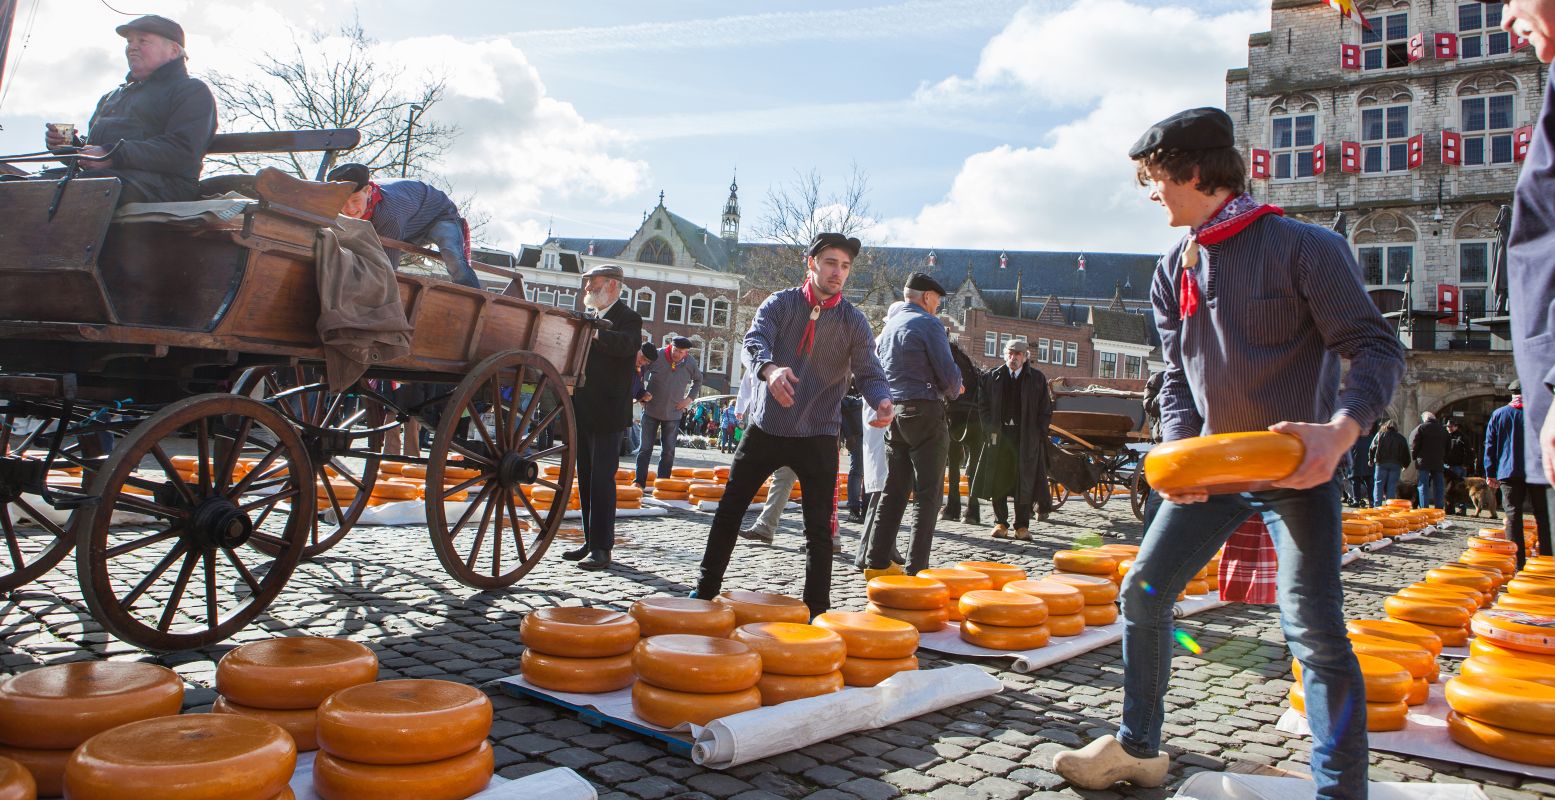 Op de Kaasmarkt voor de Waag gooien handelaren met kazen, een boeiend schouwsspel. Foto: VVV Gouda